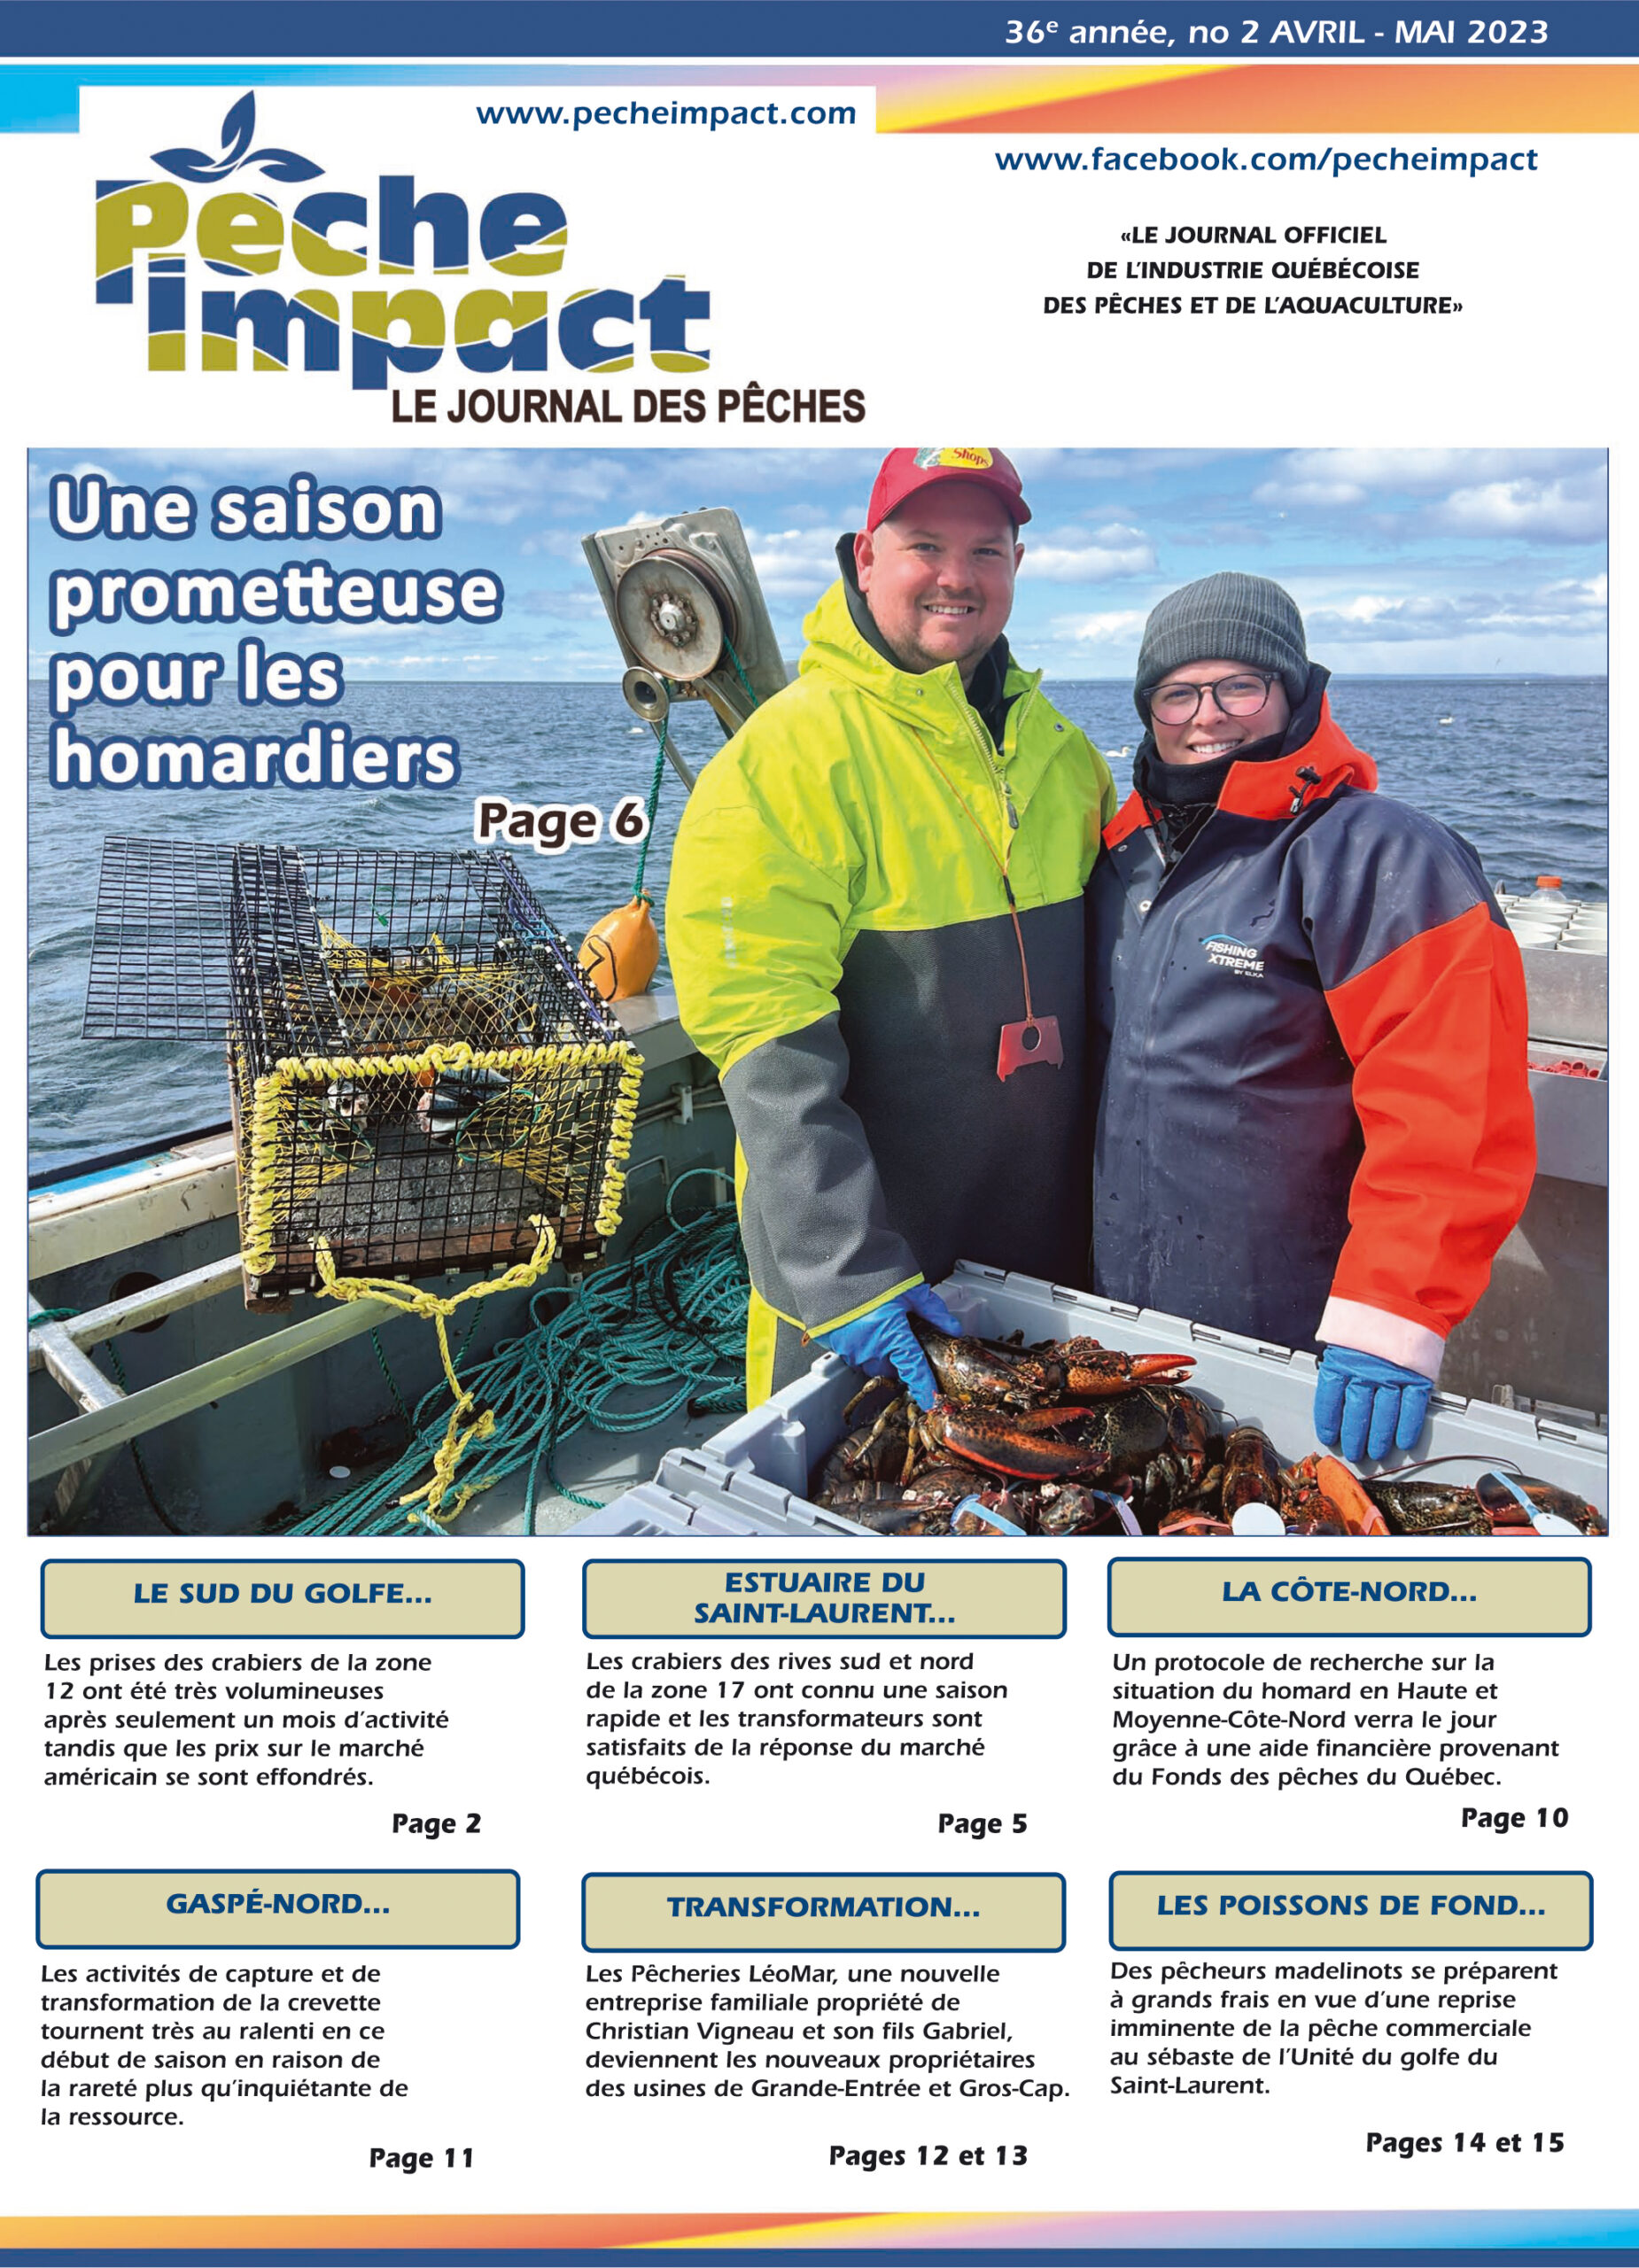 École des pêches et de l'aquaculture du Québec (ÉPAQ)